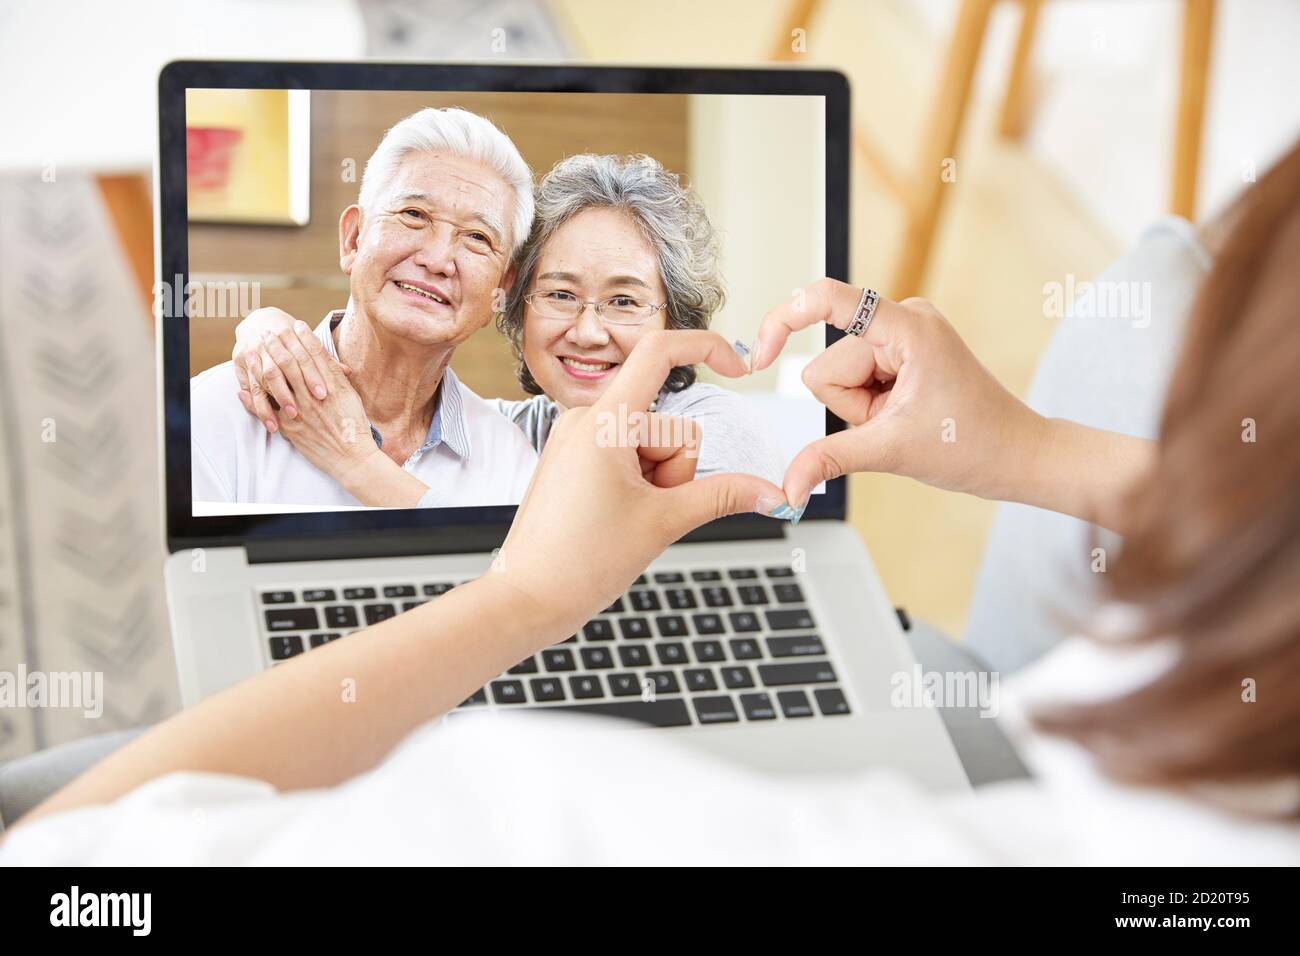 giovane figlia asiatica adulta che rimane a casa formando un cuore forma con le mani mentre parla con i genitori anziani in linea via chat video con computer portatile Foto Stock